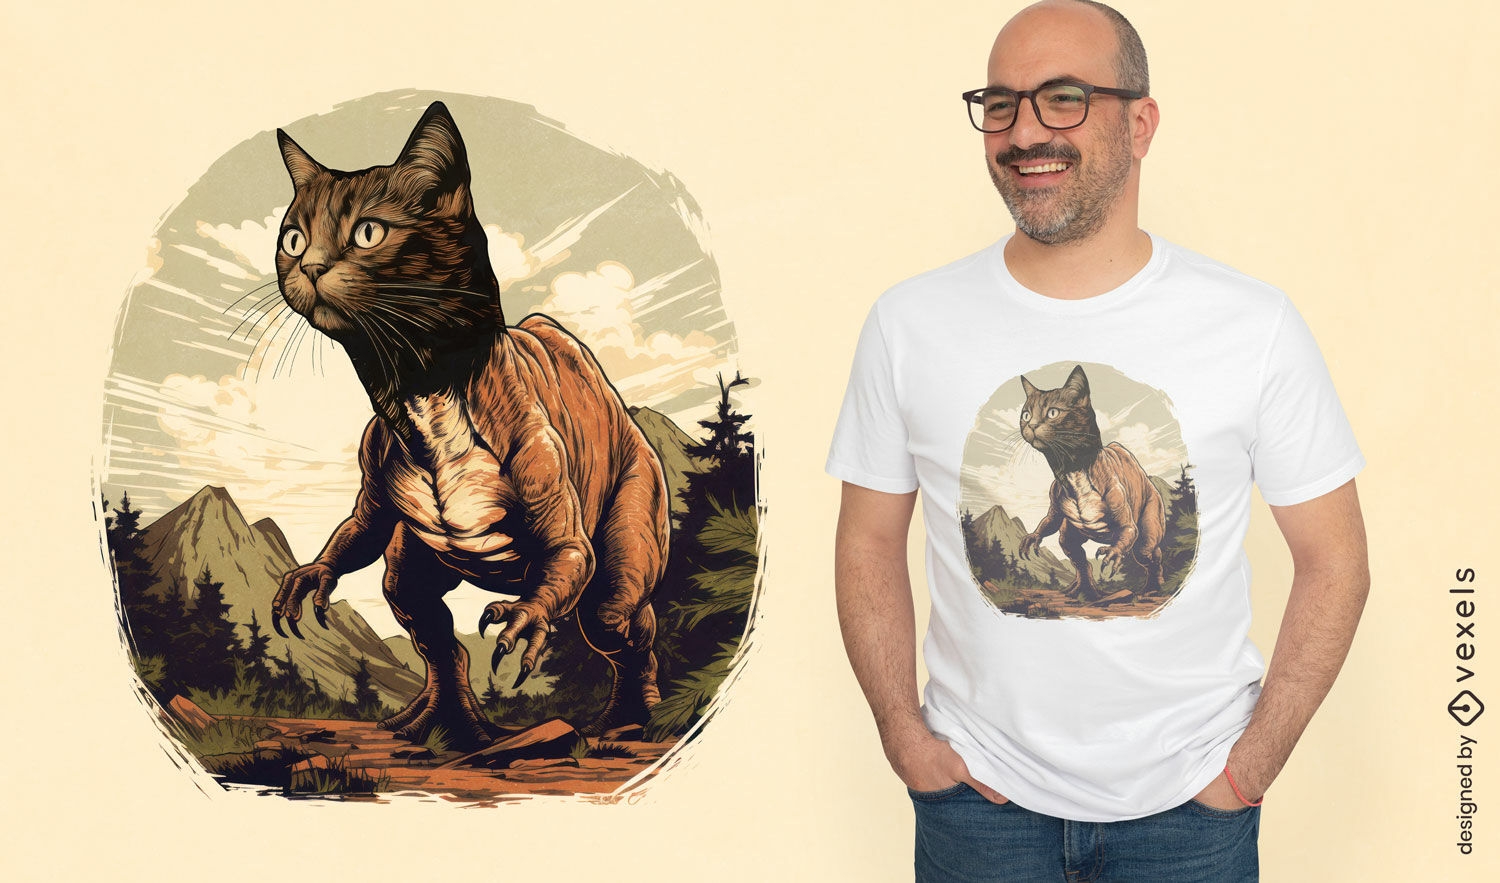 Dise?o de camiseta de gato tiranosaurio en la naturaleza.